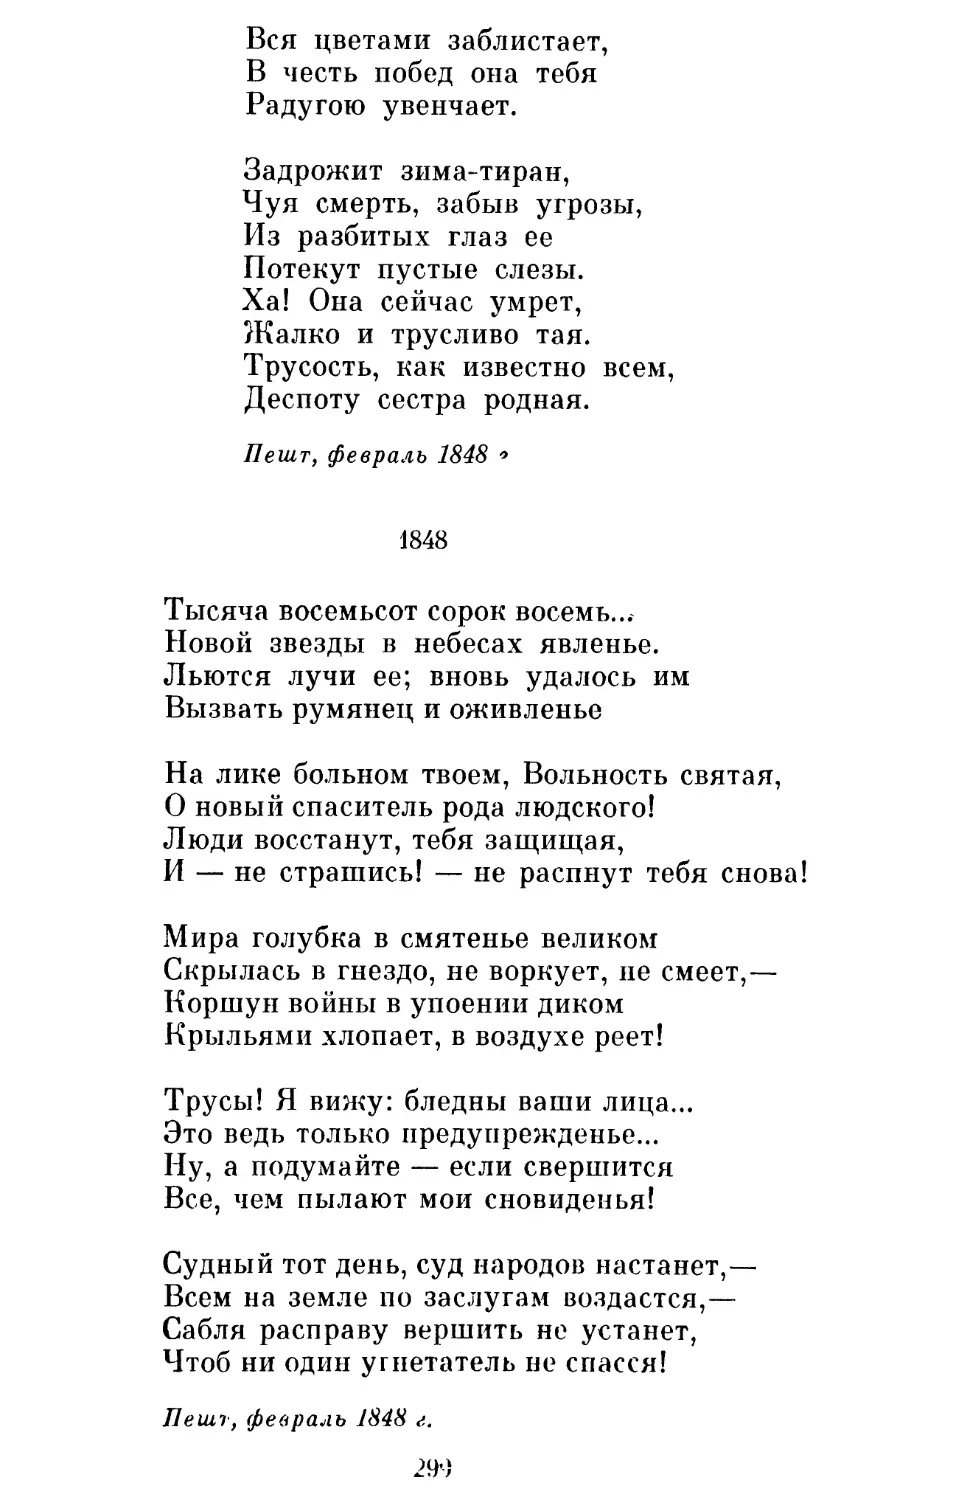 1848. Перевод Л. Мартынова